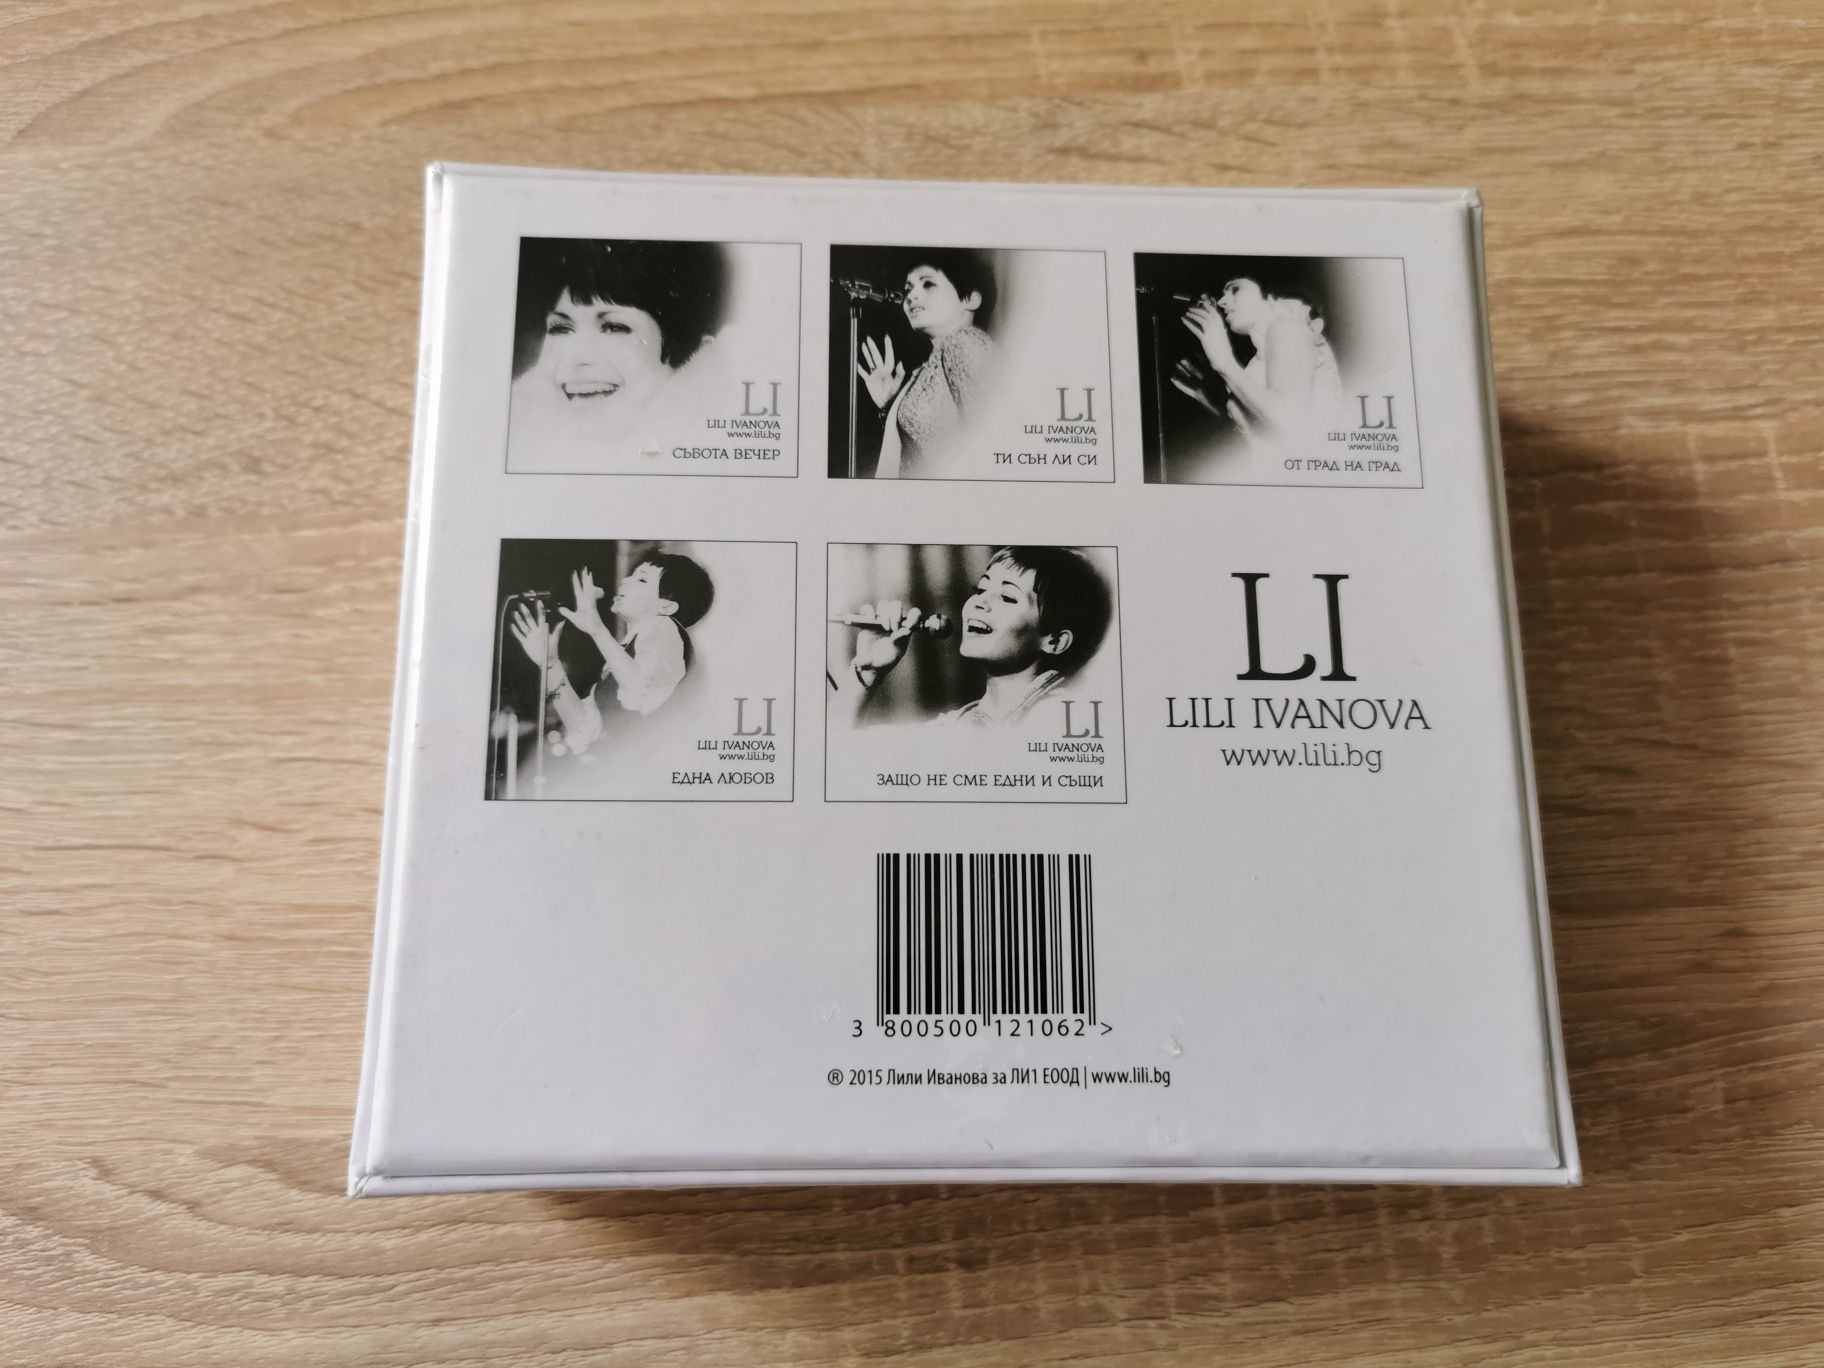 Лили Иванова 5 CD Невероятно, Колекционерско издание, ново